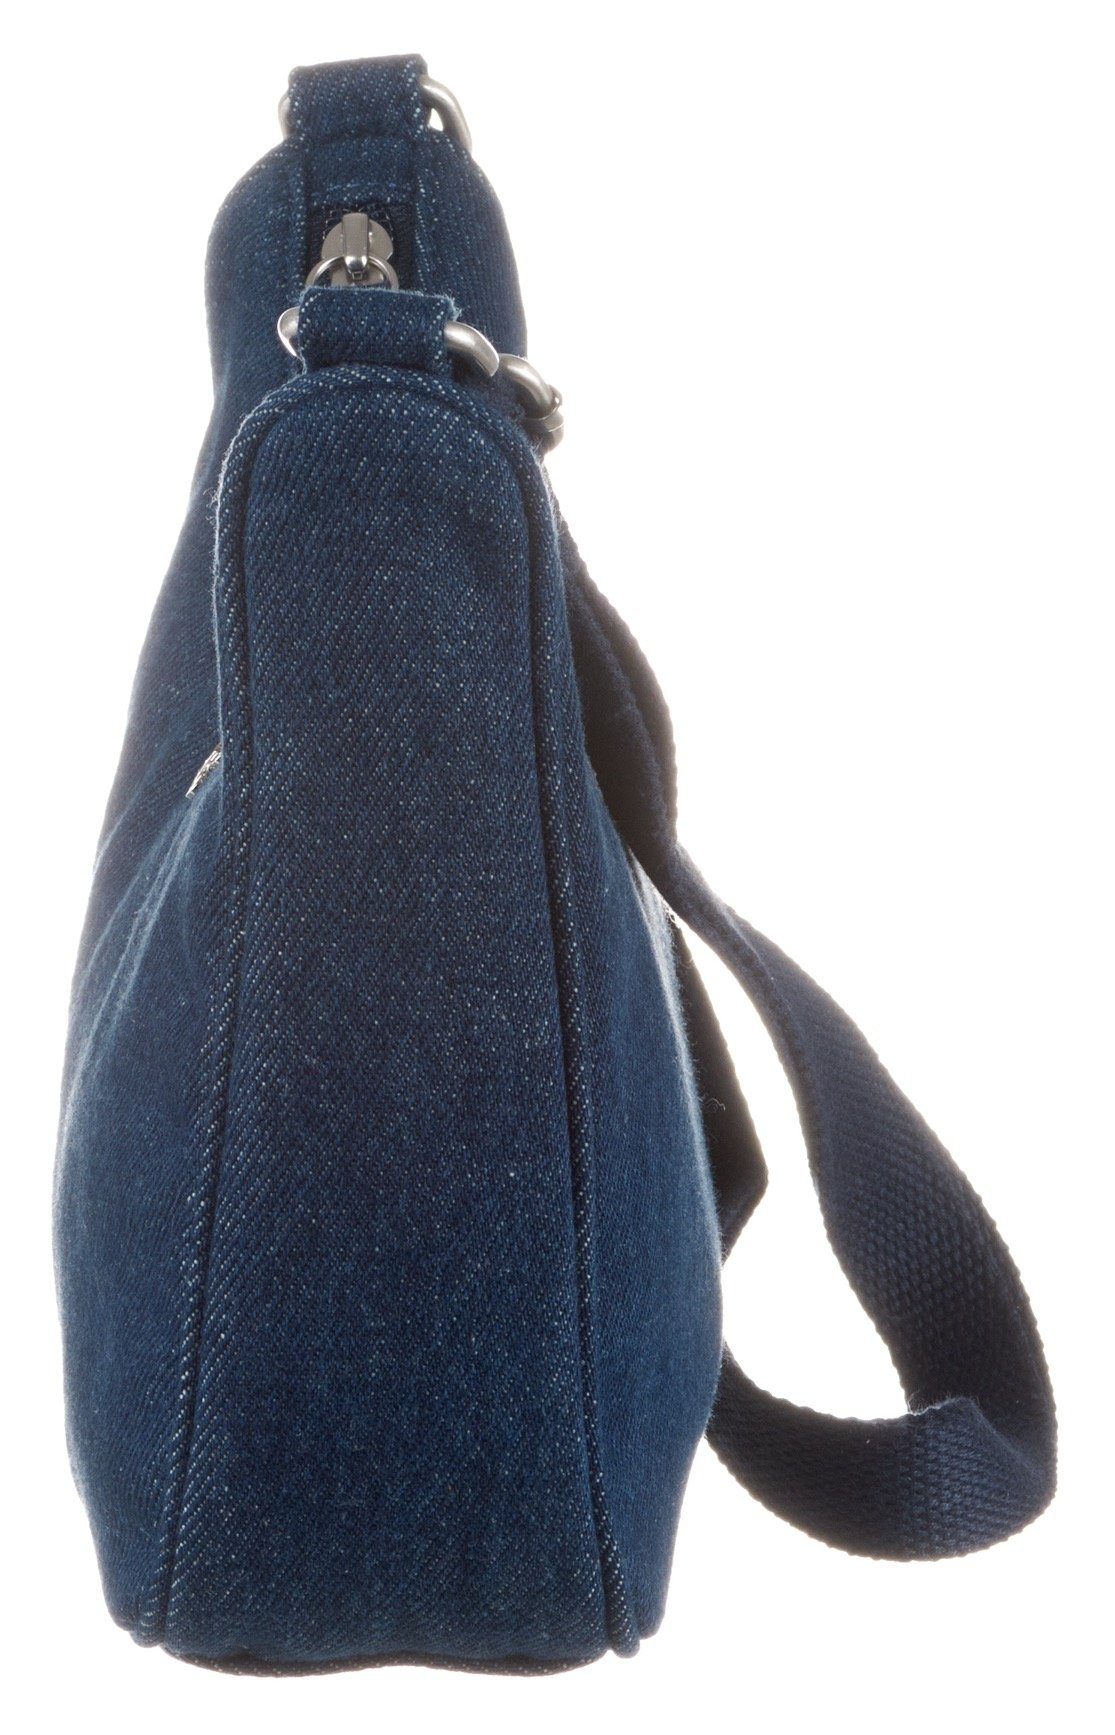 Levi's Schoudertas Women's Small Shoulder Bag